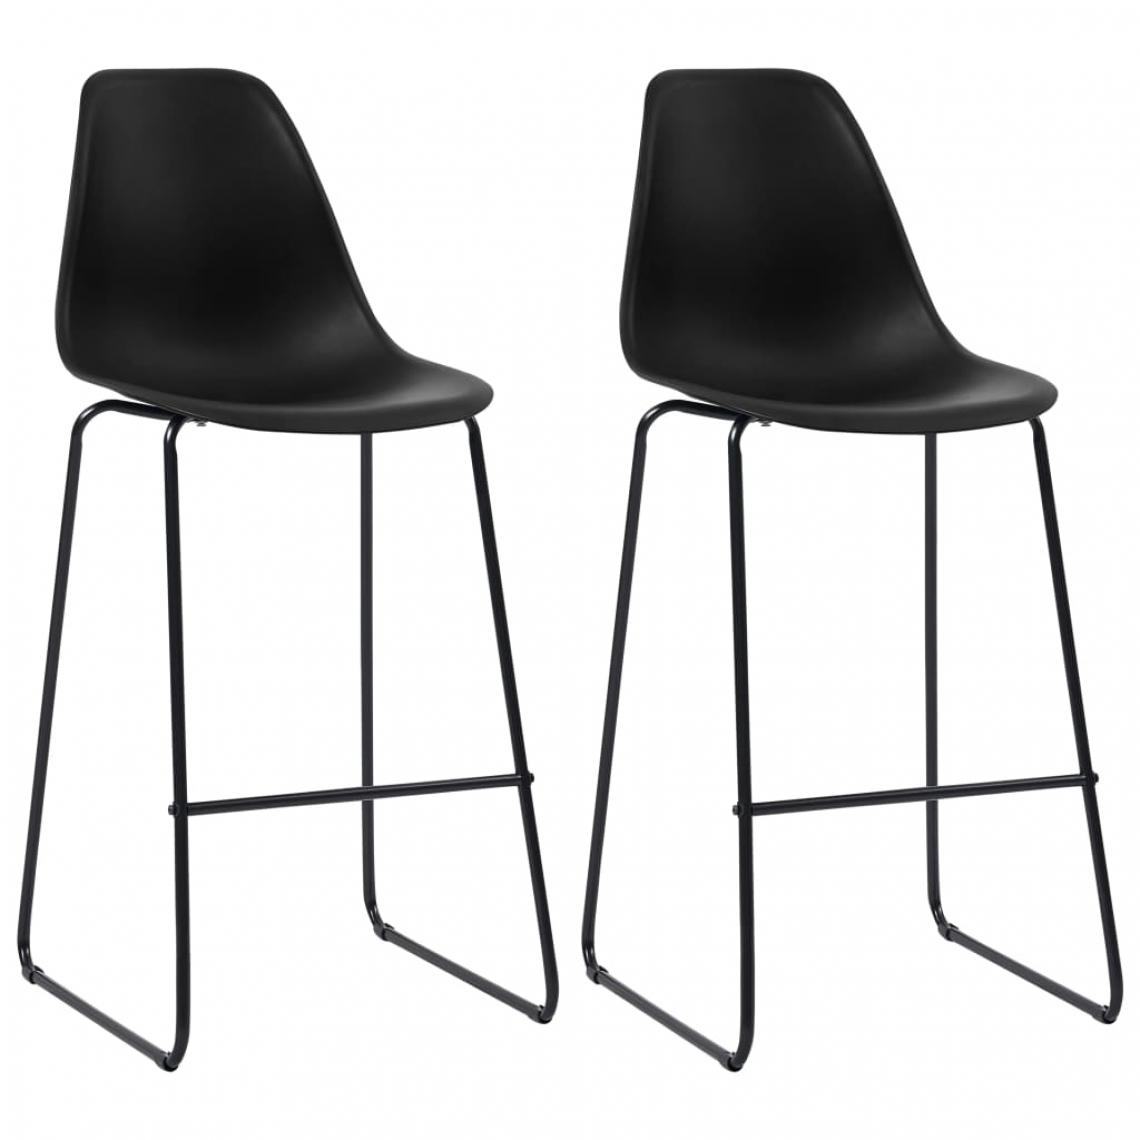 Icaverne - Splendide Fauteuils et chaises famille Helsinki Chaises de bar 2 pcs Noir Plastique - Tabourets